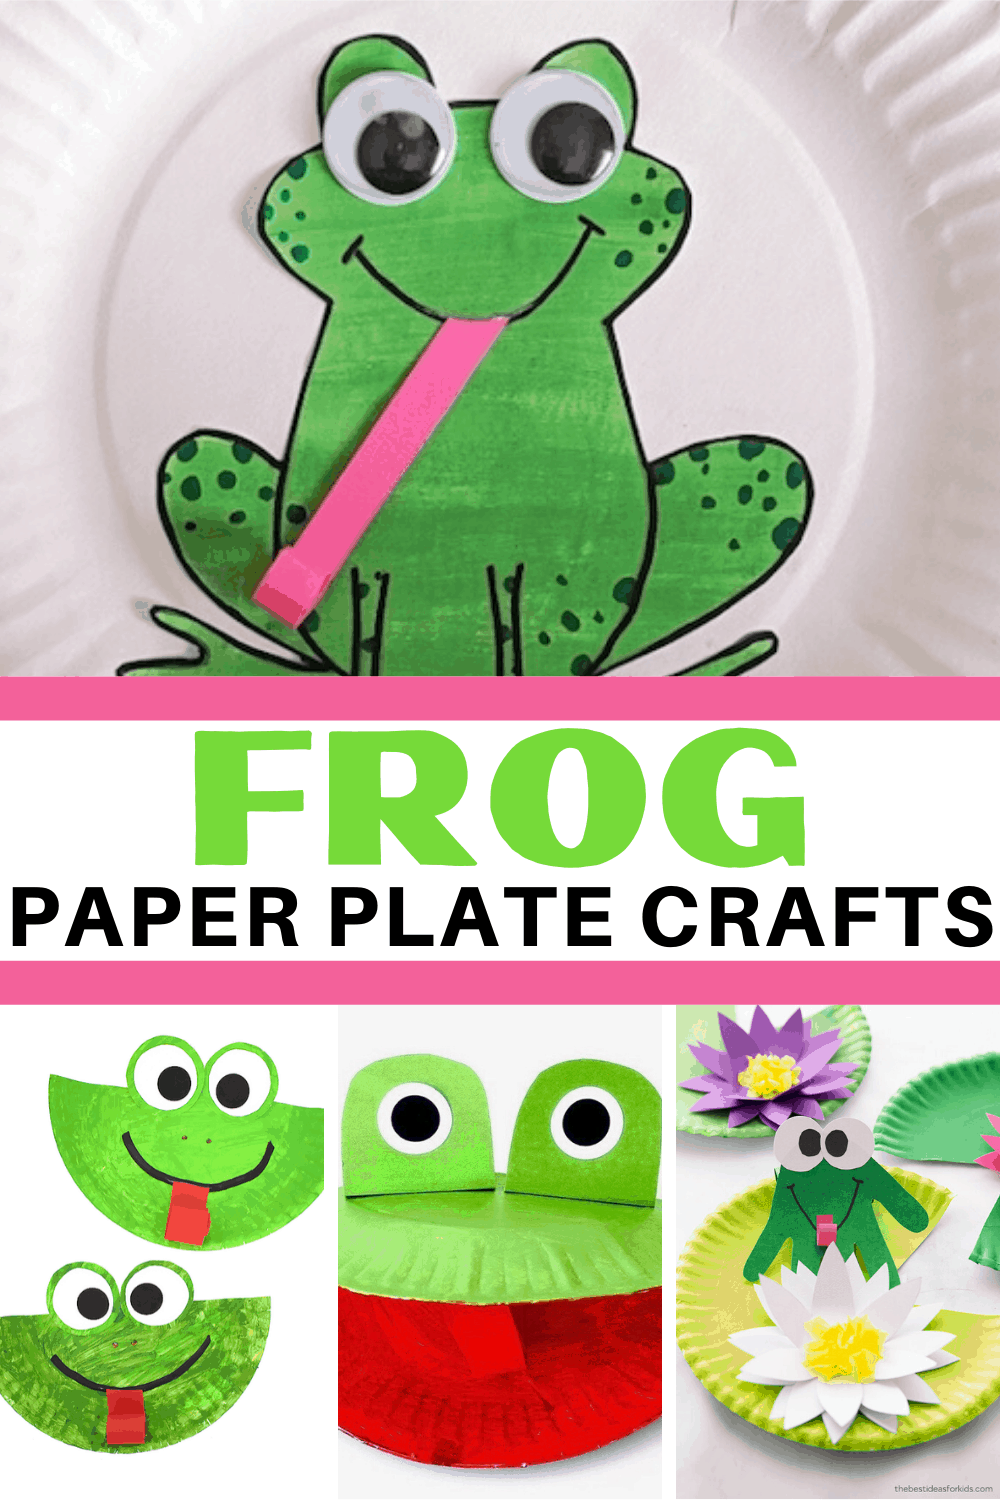 frog-pp-crafts-2 Printable Crafts for Kids